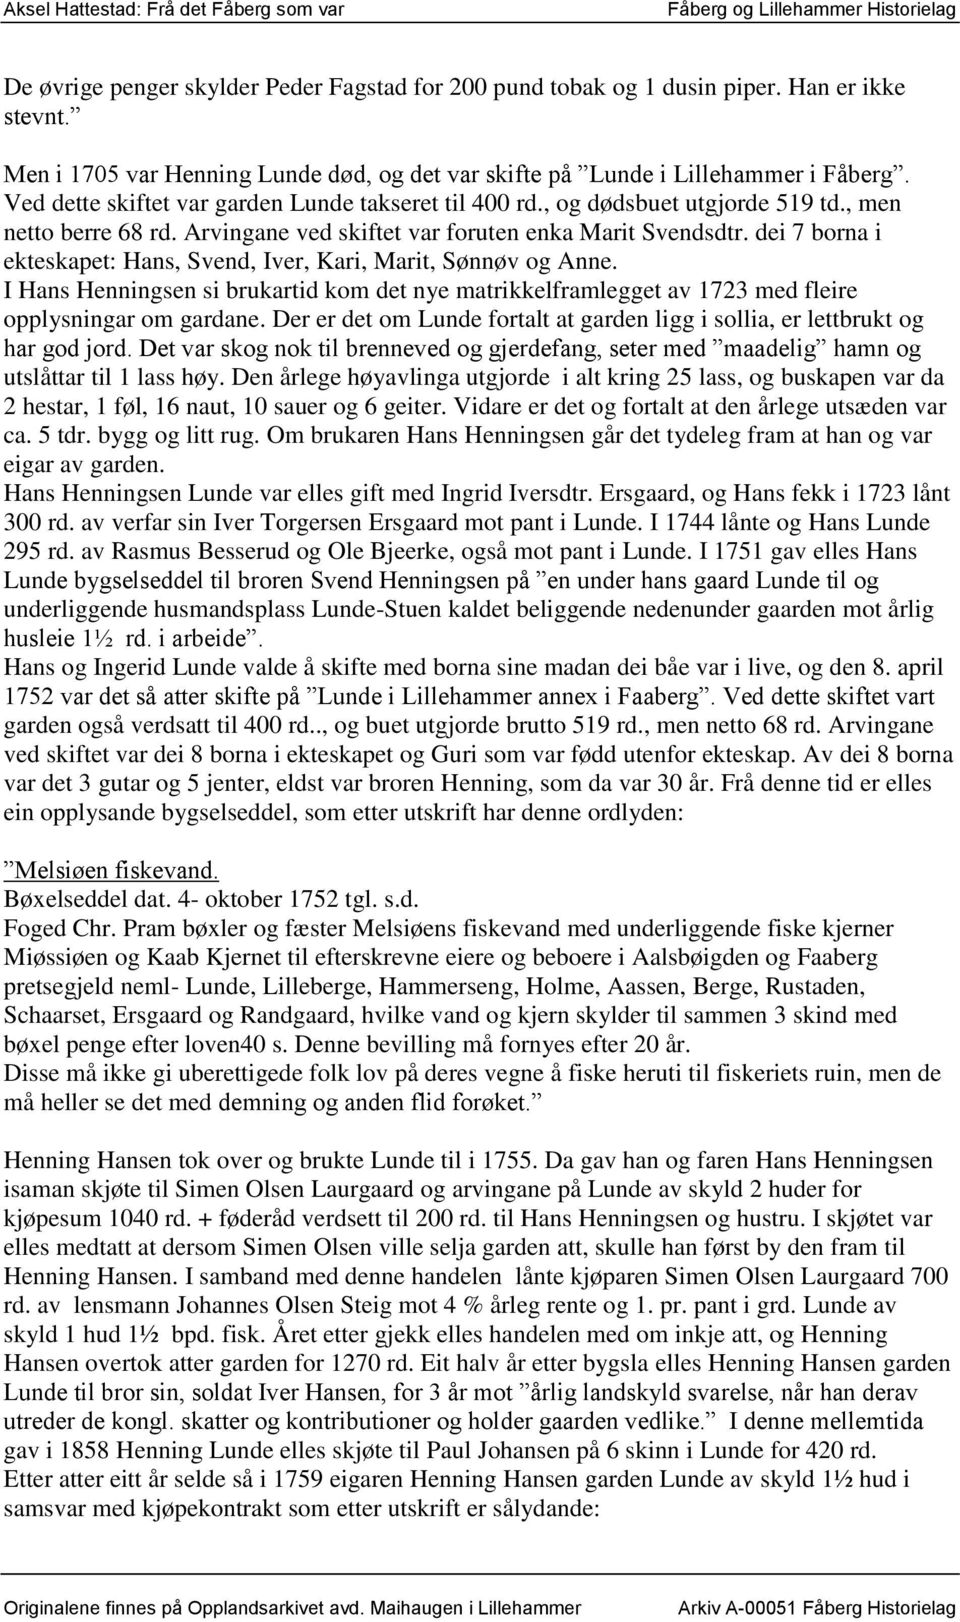 dei 7 borna i ekteskapet: Hans, Svend, Iver, Kari, Marit, Sønnøv og Anne. I Hans Henningsen si brukartid kom det nye matrikkelframlegget av 1723 med fleire opplysningar om gardane.